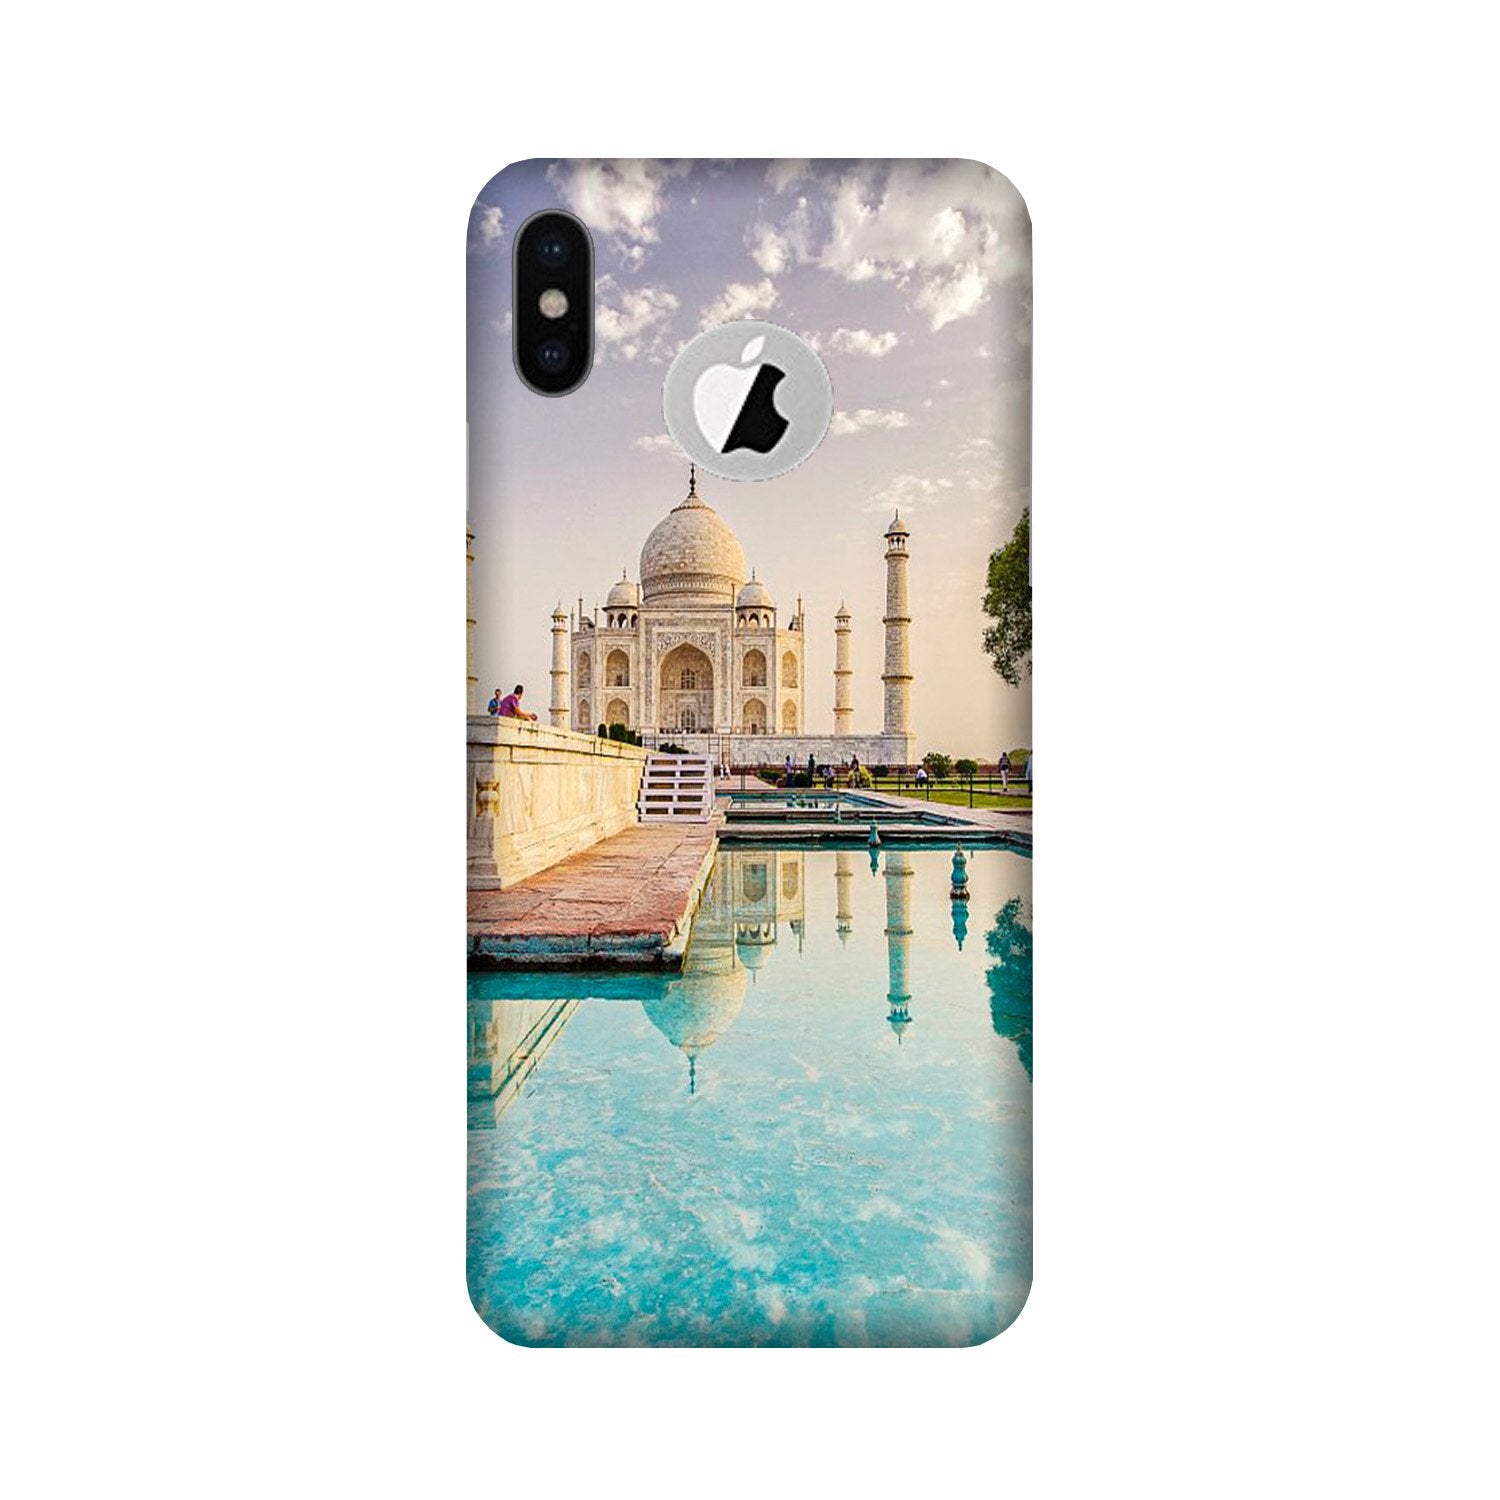 Taj Mahal Case for iPhone X logo cut (Design No. 297)